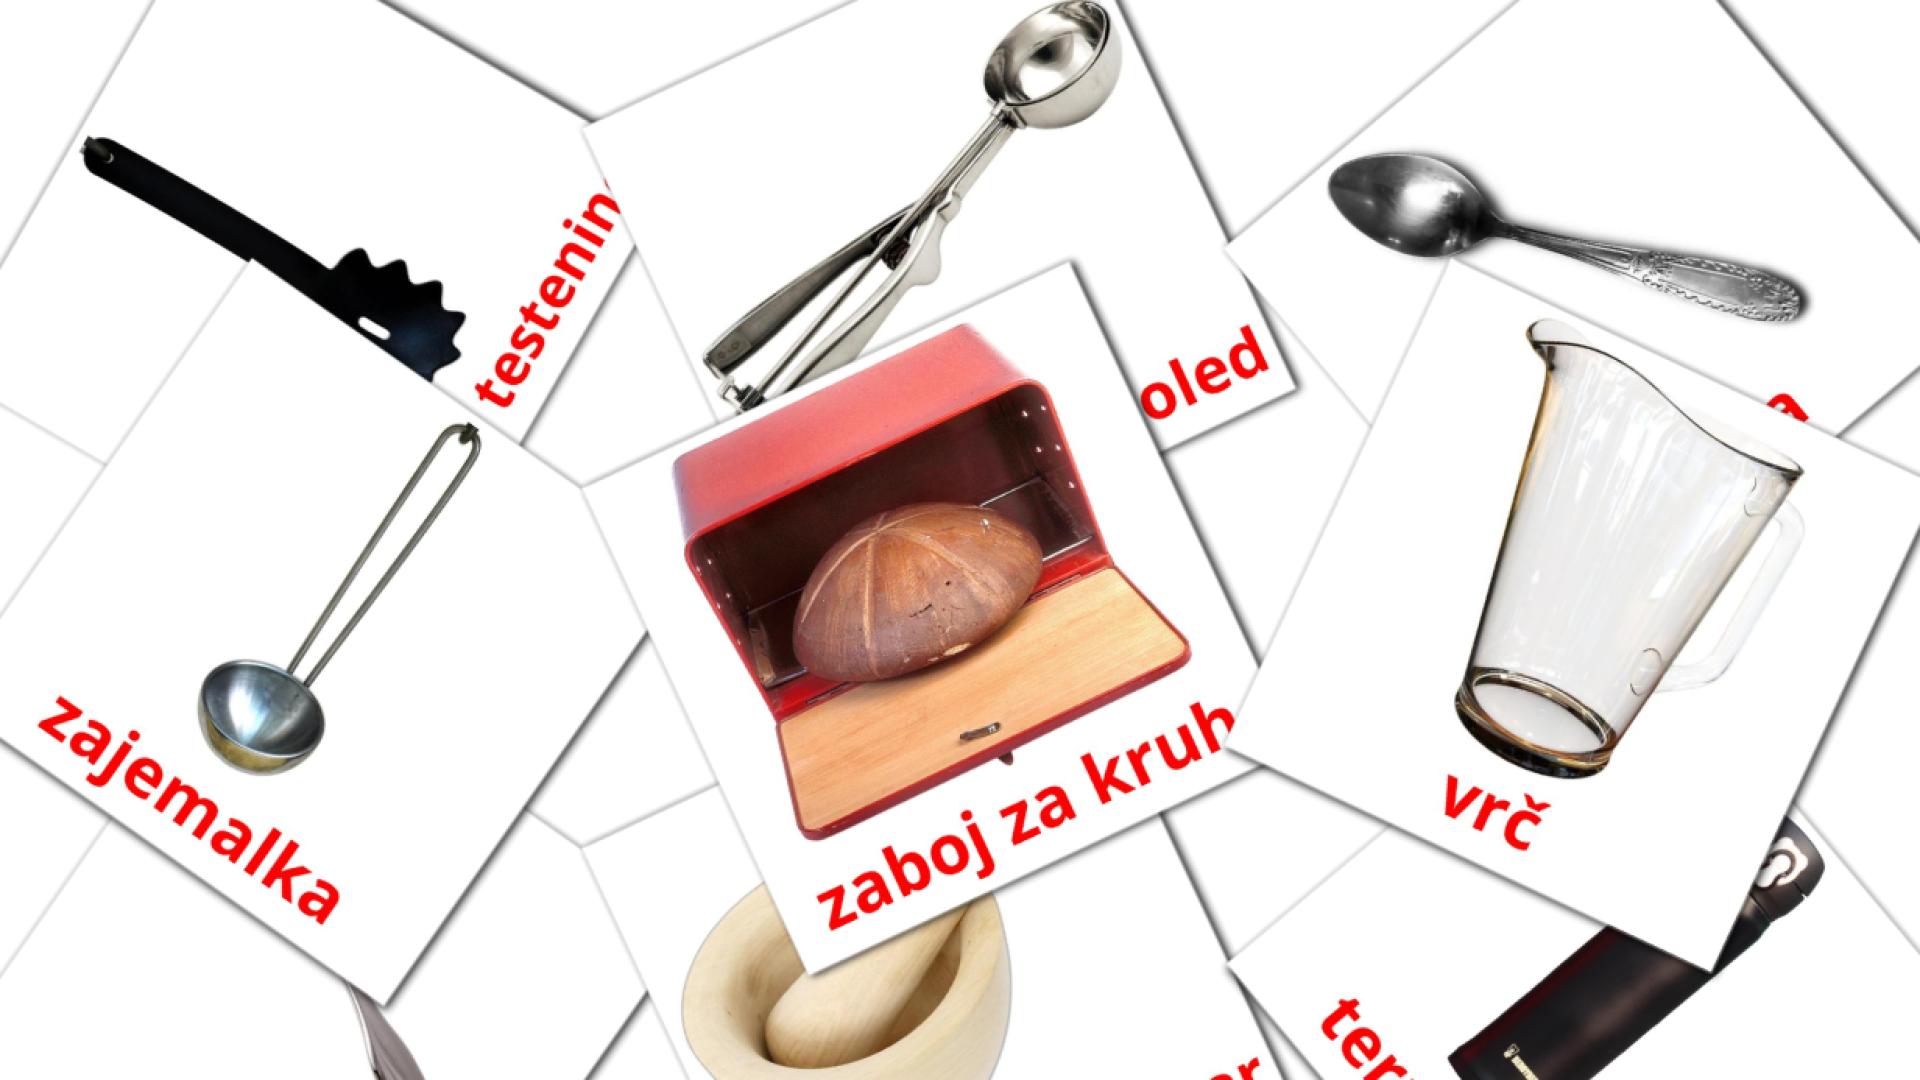 Slowenisch Kuhinjae Vokabelkarteikarten